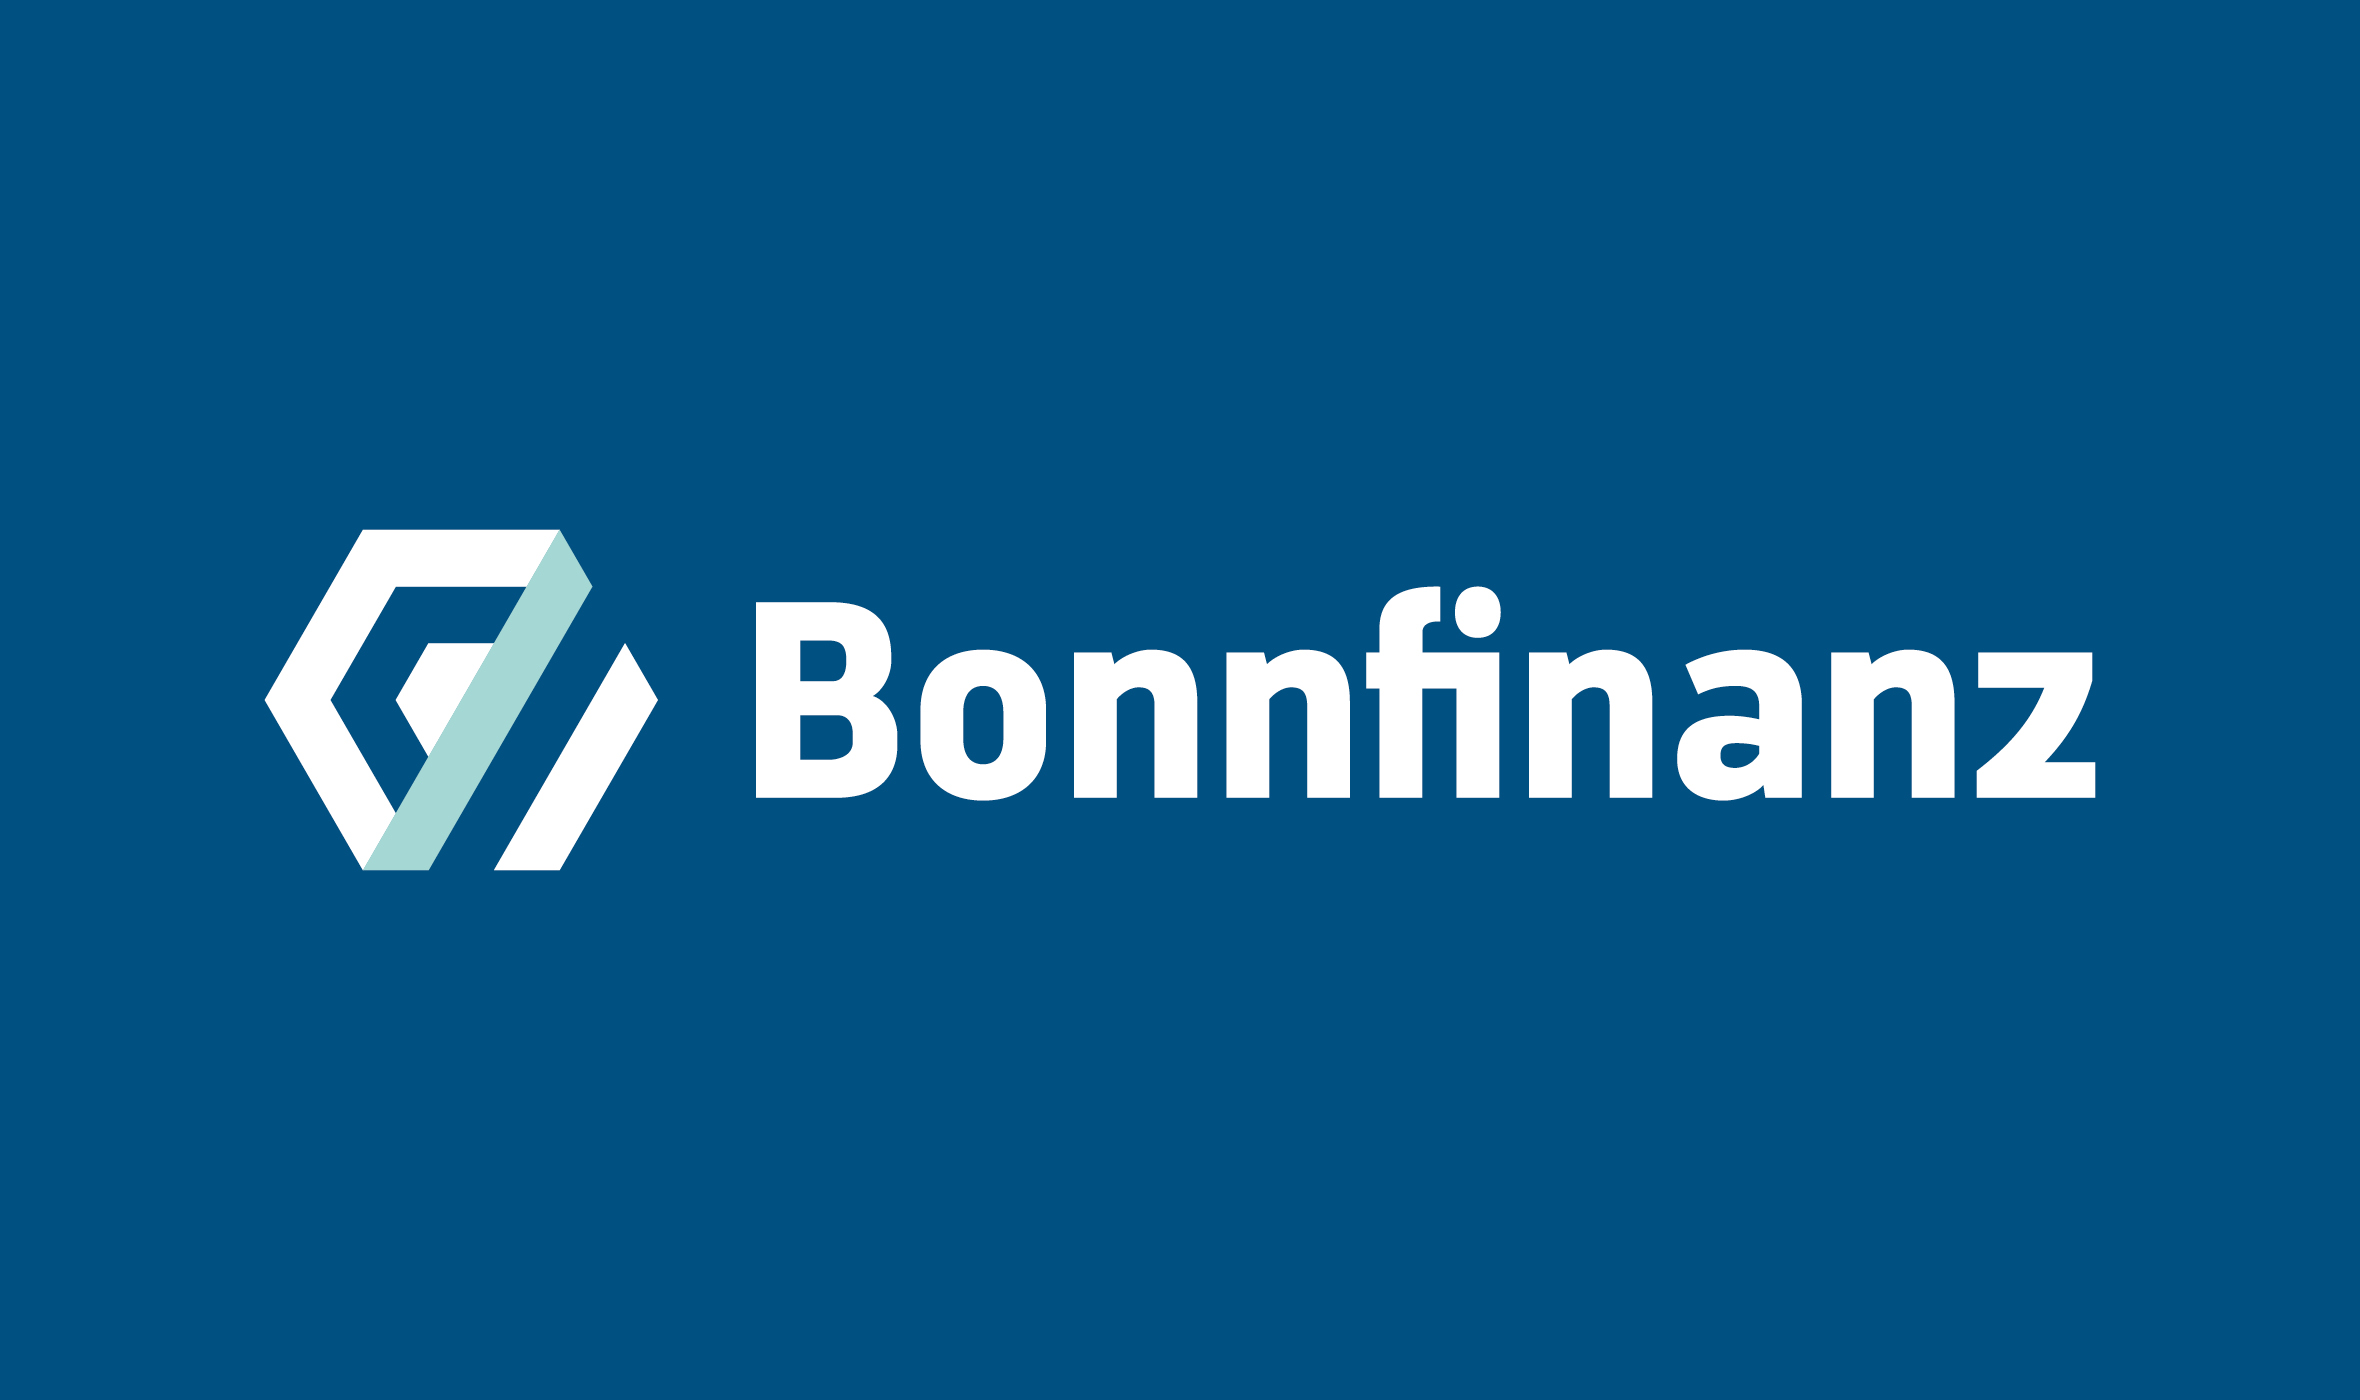 Bonnfinanz Redesign Wort-Bildmarke auf Blau / True Blue